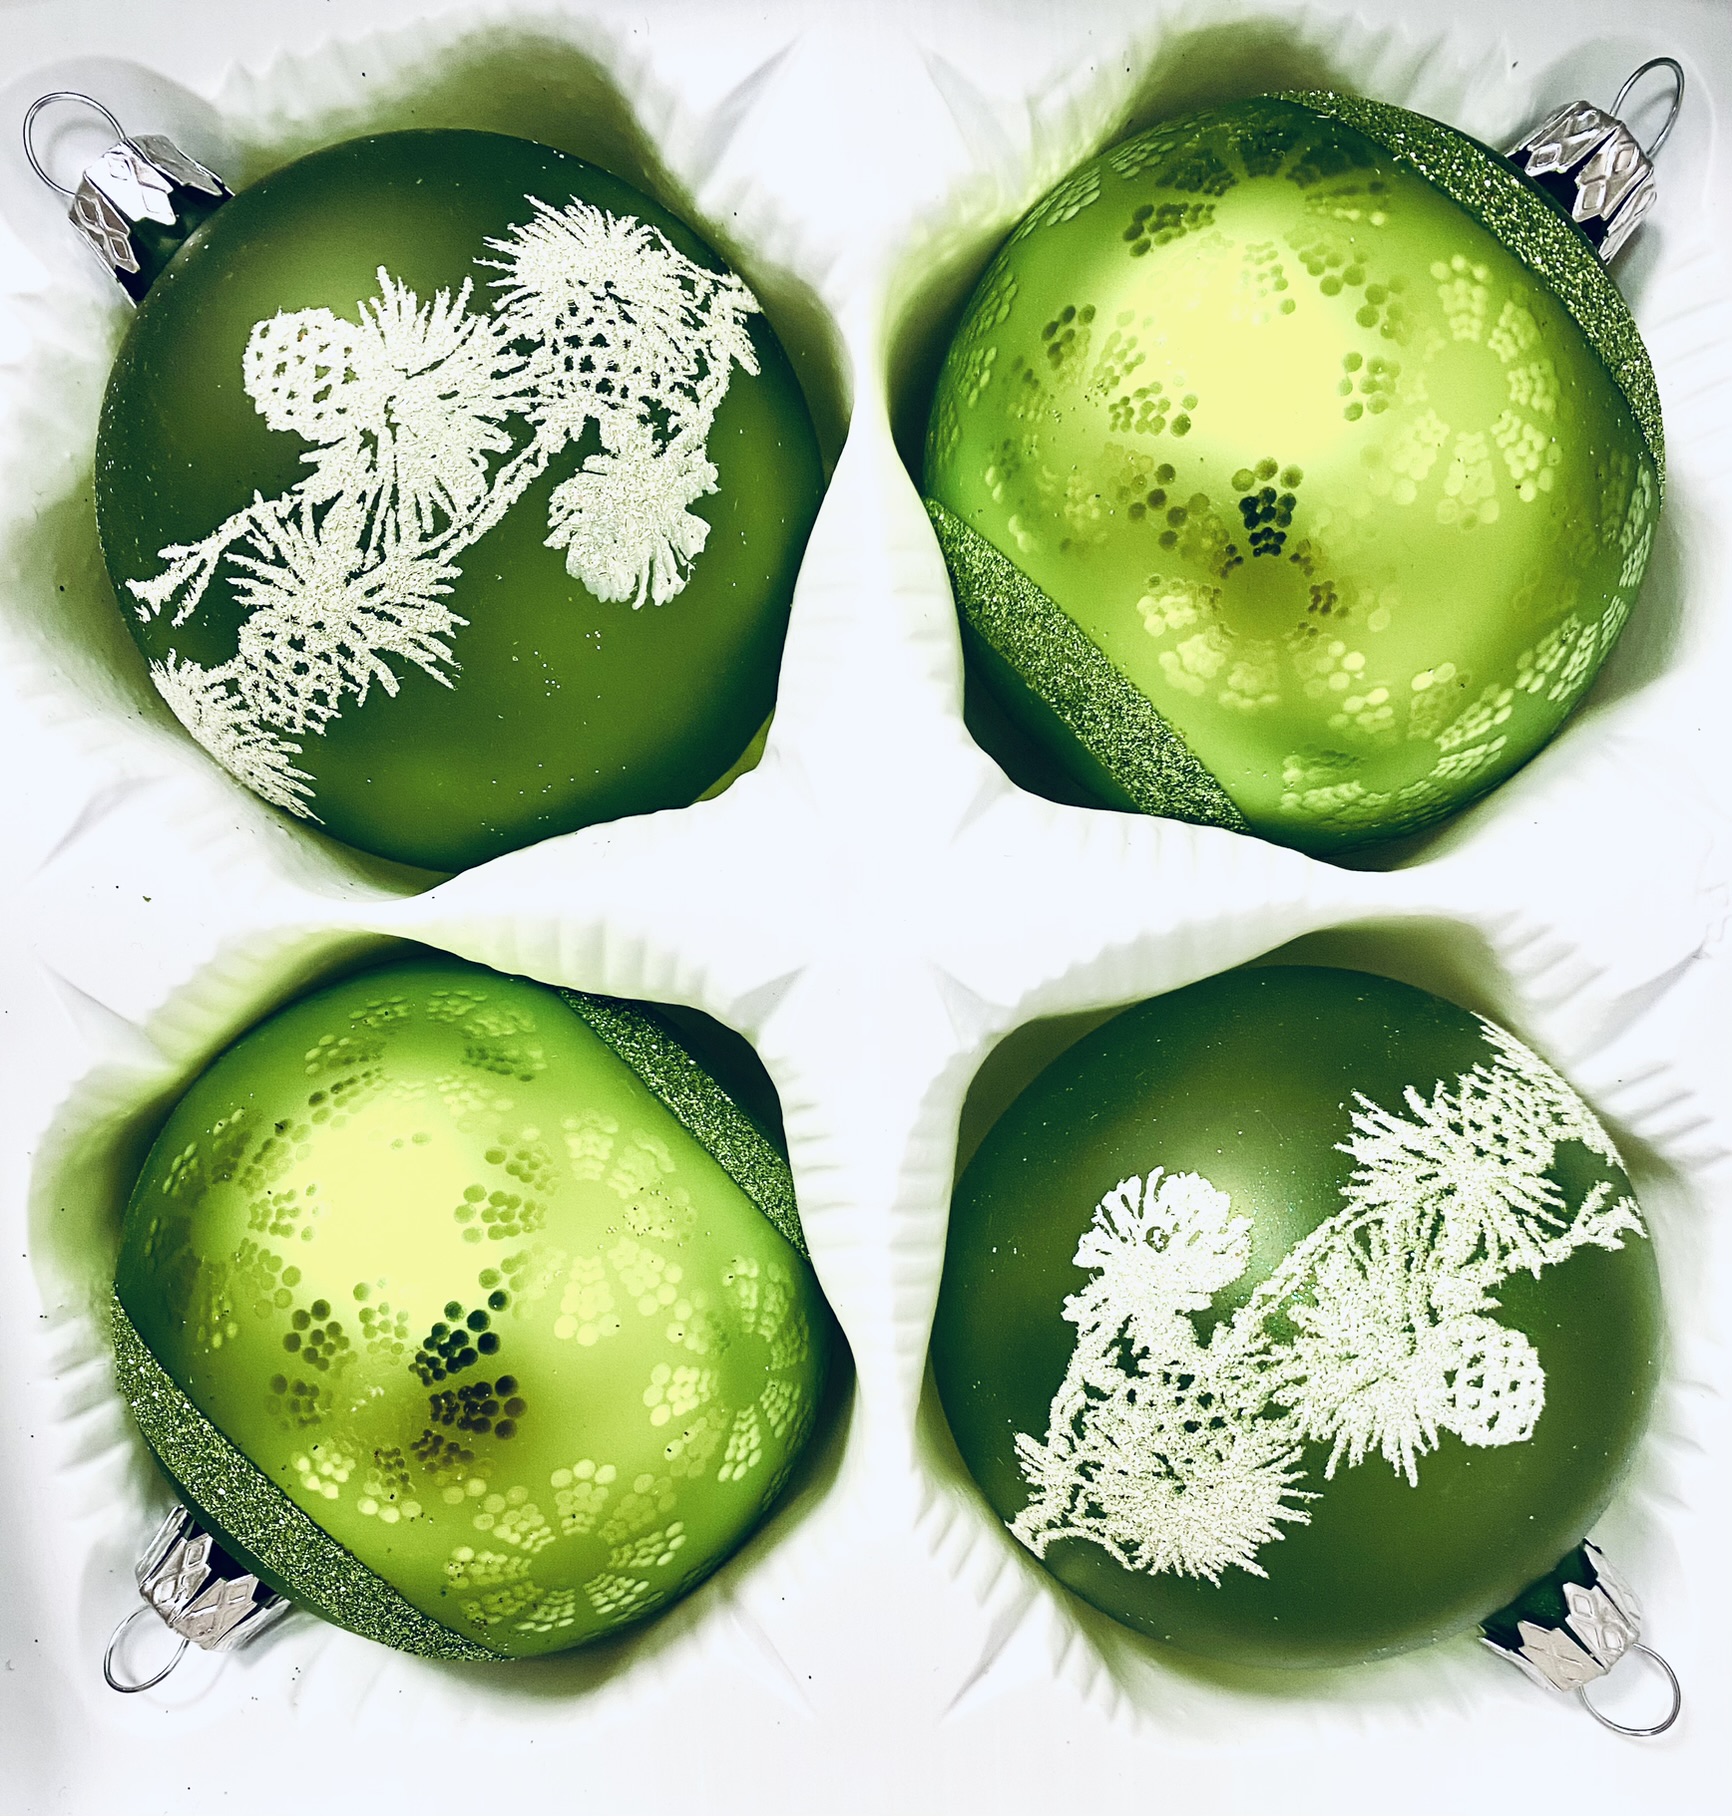 Zelená pohádka: Skleněná vánoční Sada - Když mráz a sníh kouzlí (Velikost 7 cm) Balení: 4 ks, Barva: zelená, Velikost: 7 cm